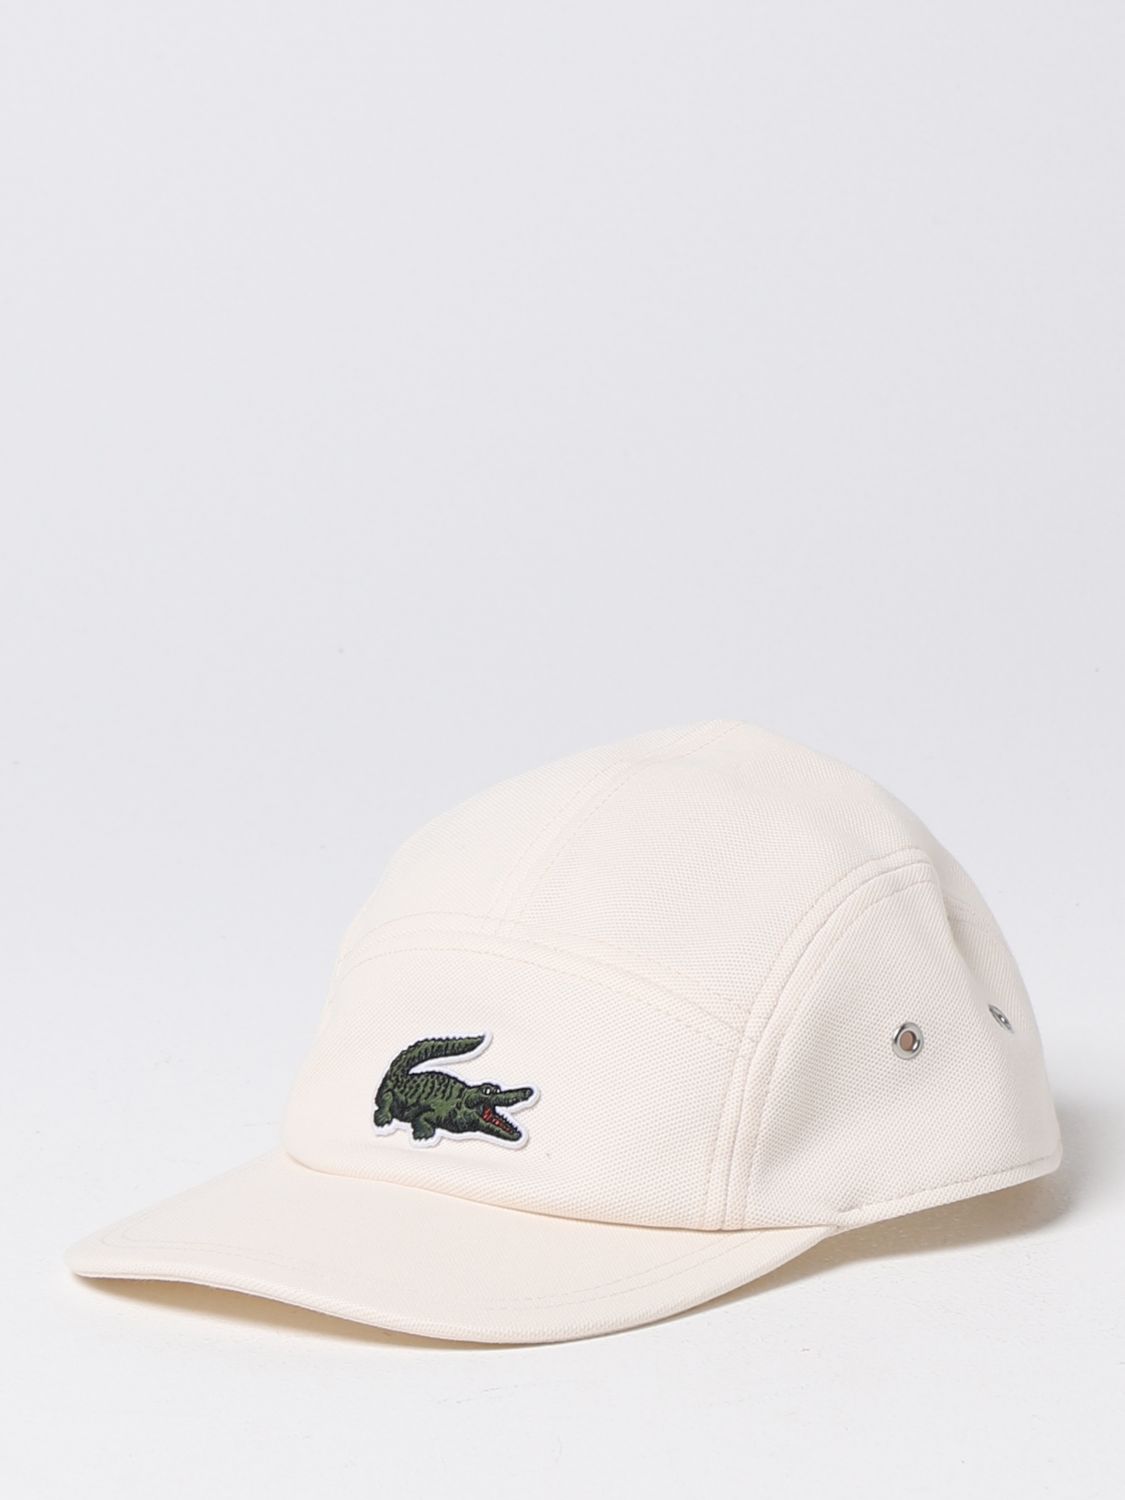 hat for man - Milk | Lacoste hat RK6843 online GIGLIO.COM